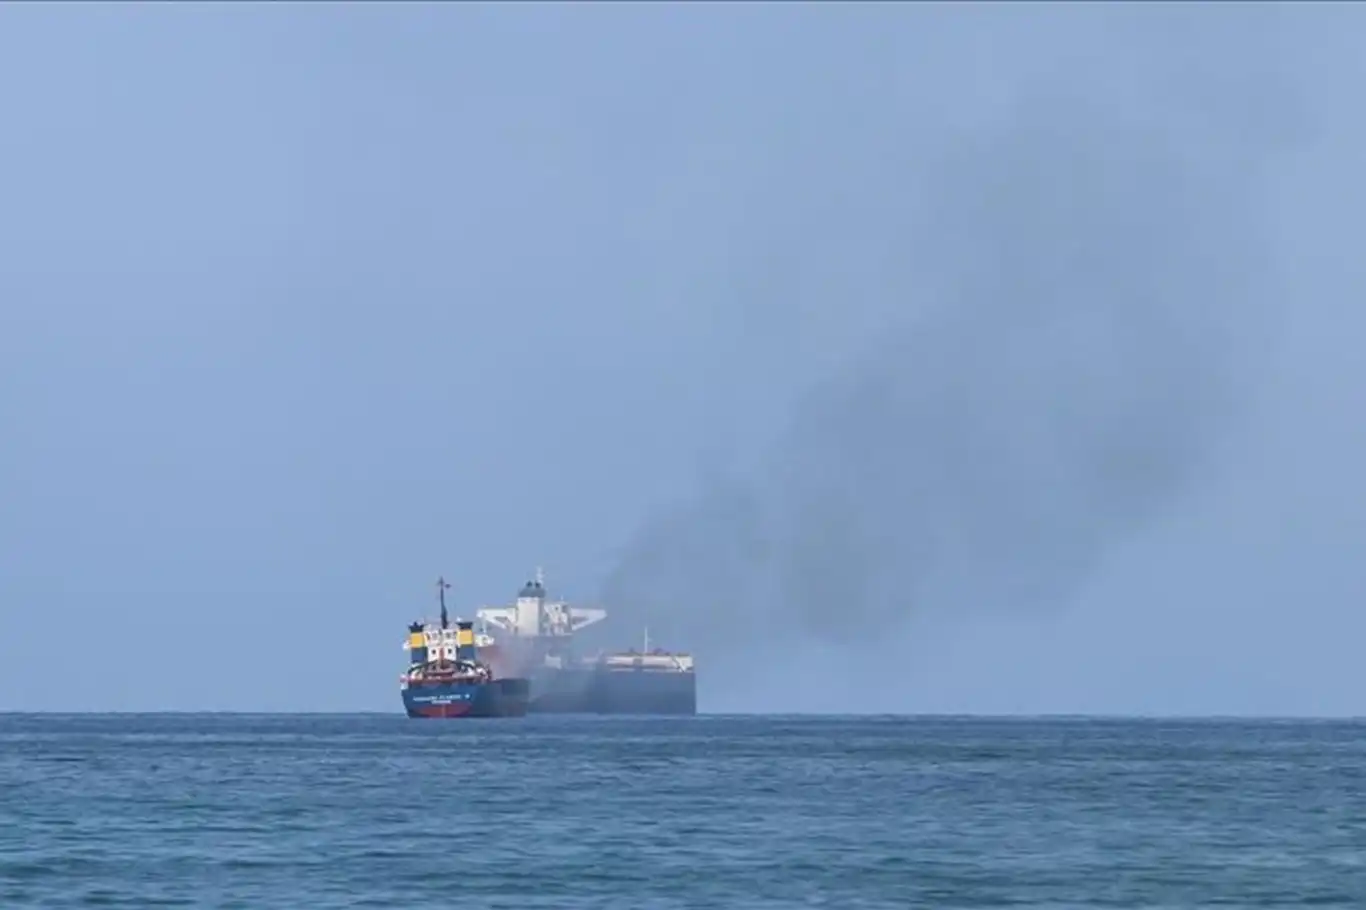 أنصار الله تعلن استهداف 3 سفن بعملياتٍ نوعية في البحر الأحمر والعربي والمتوسط